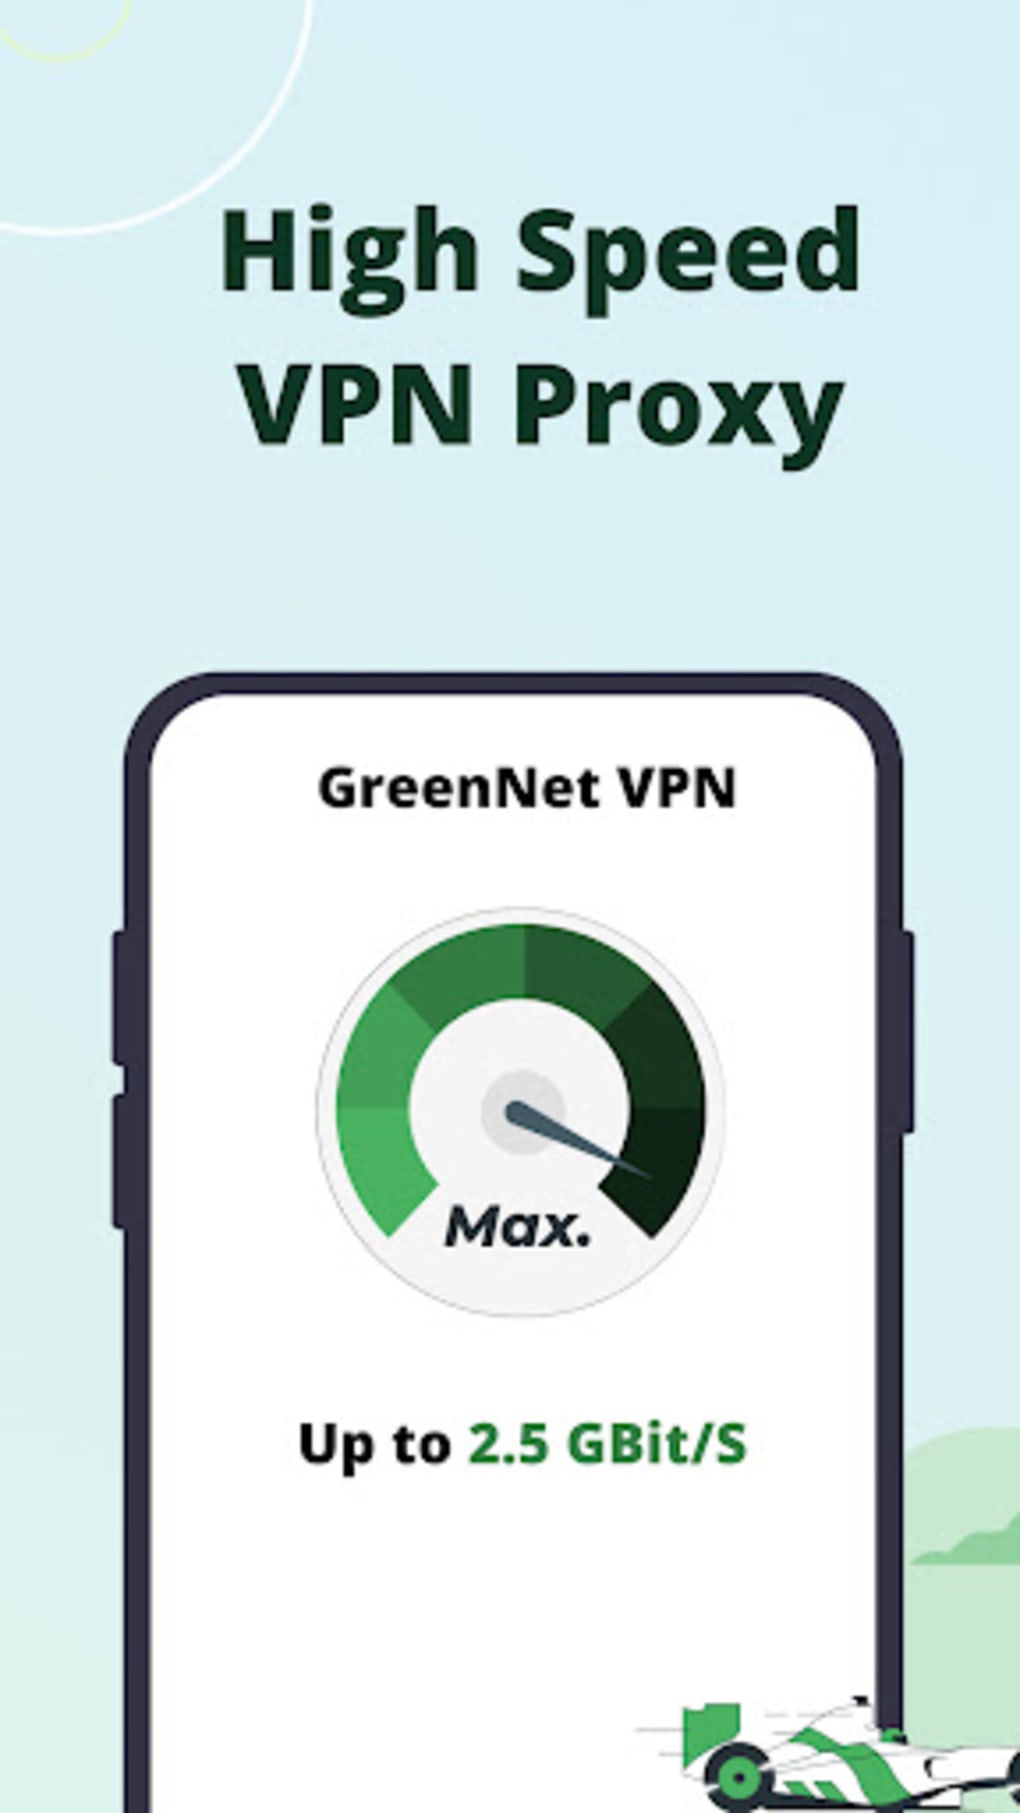 Desbloqueie sites com uma VPN, Tor ou Proxy